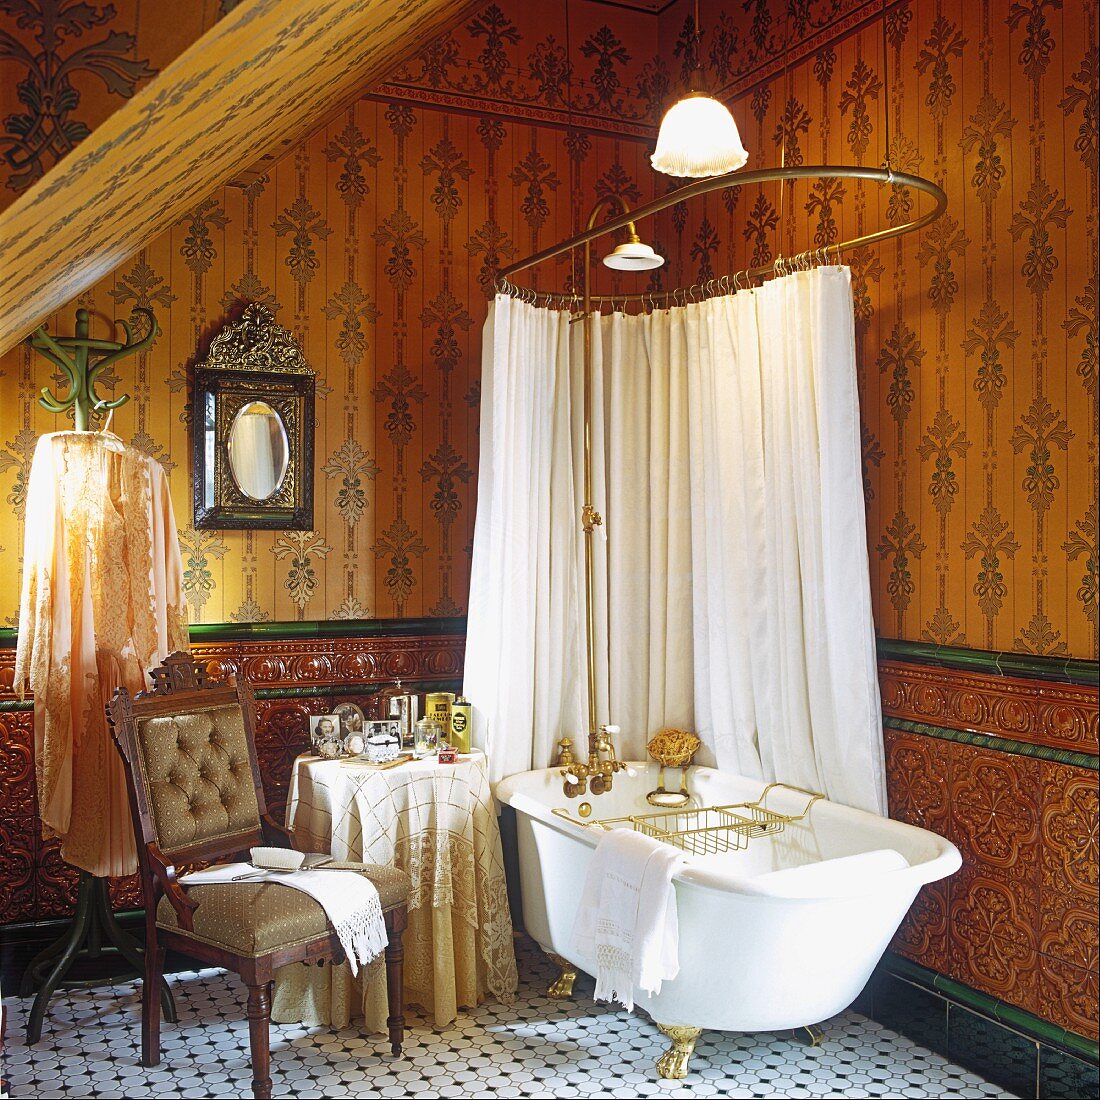 Freistehende Badewanne mit goldenen Füssen, mit einer darüberhängenden Brause und einem Duschvorhang in nostalgischem Badezimmer